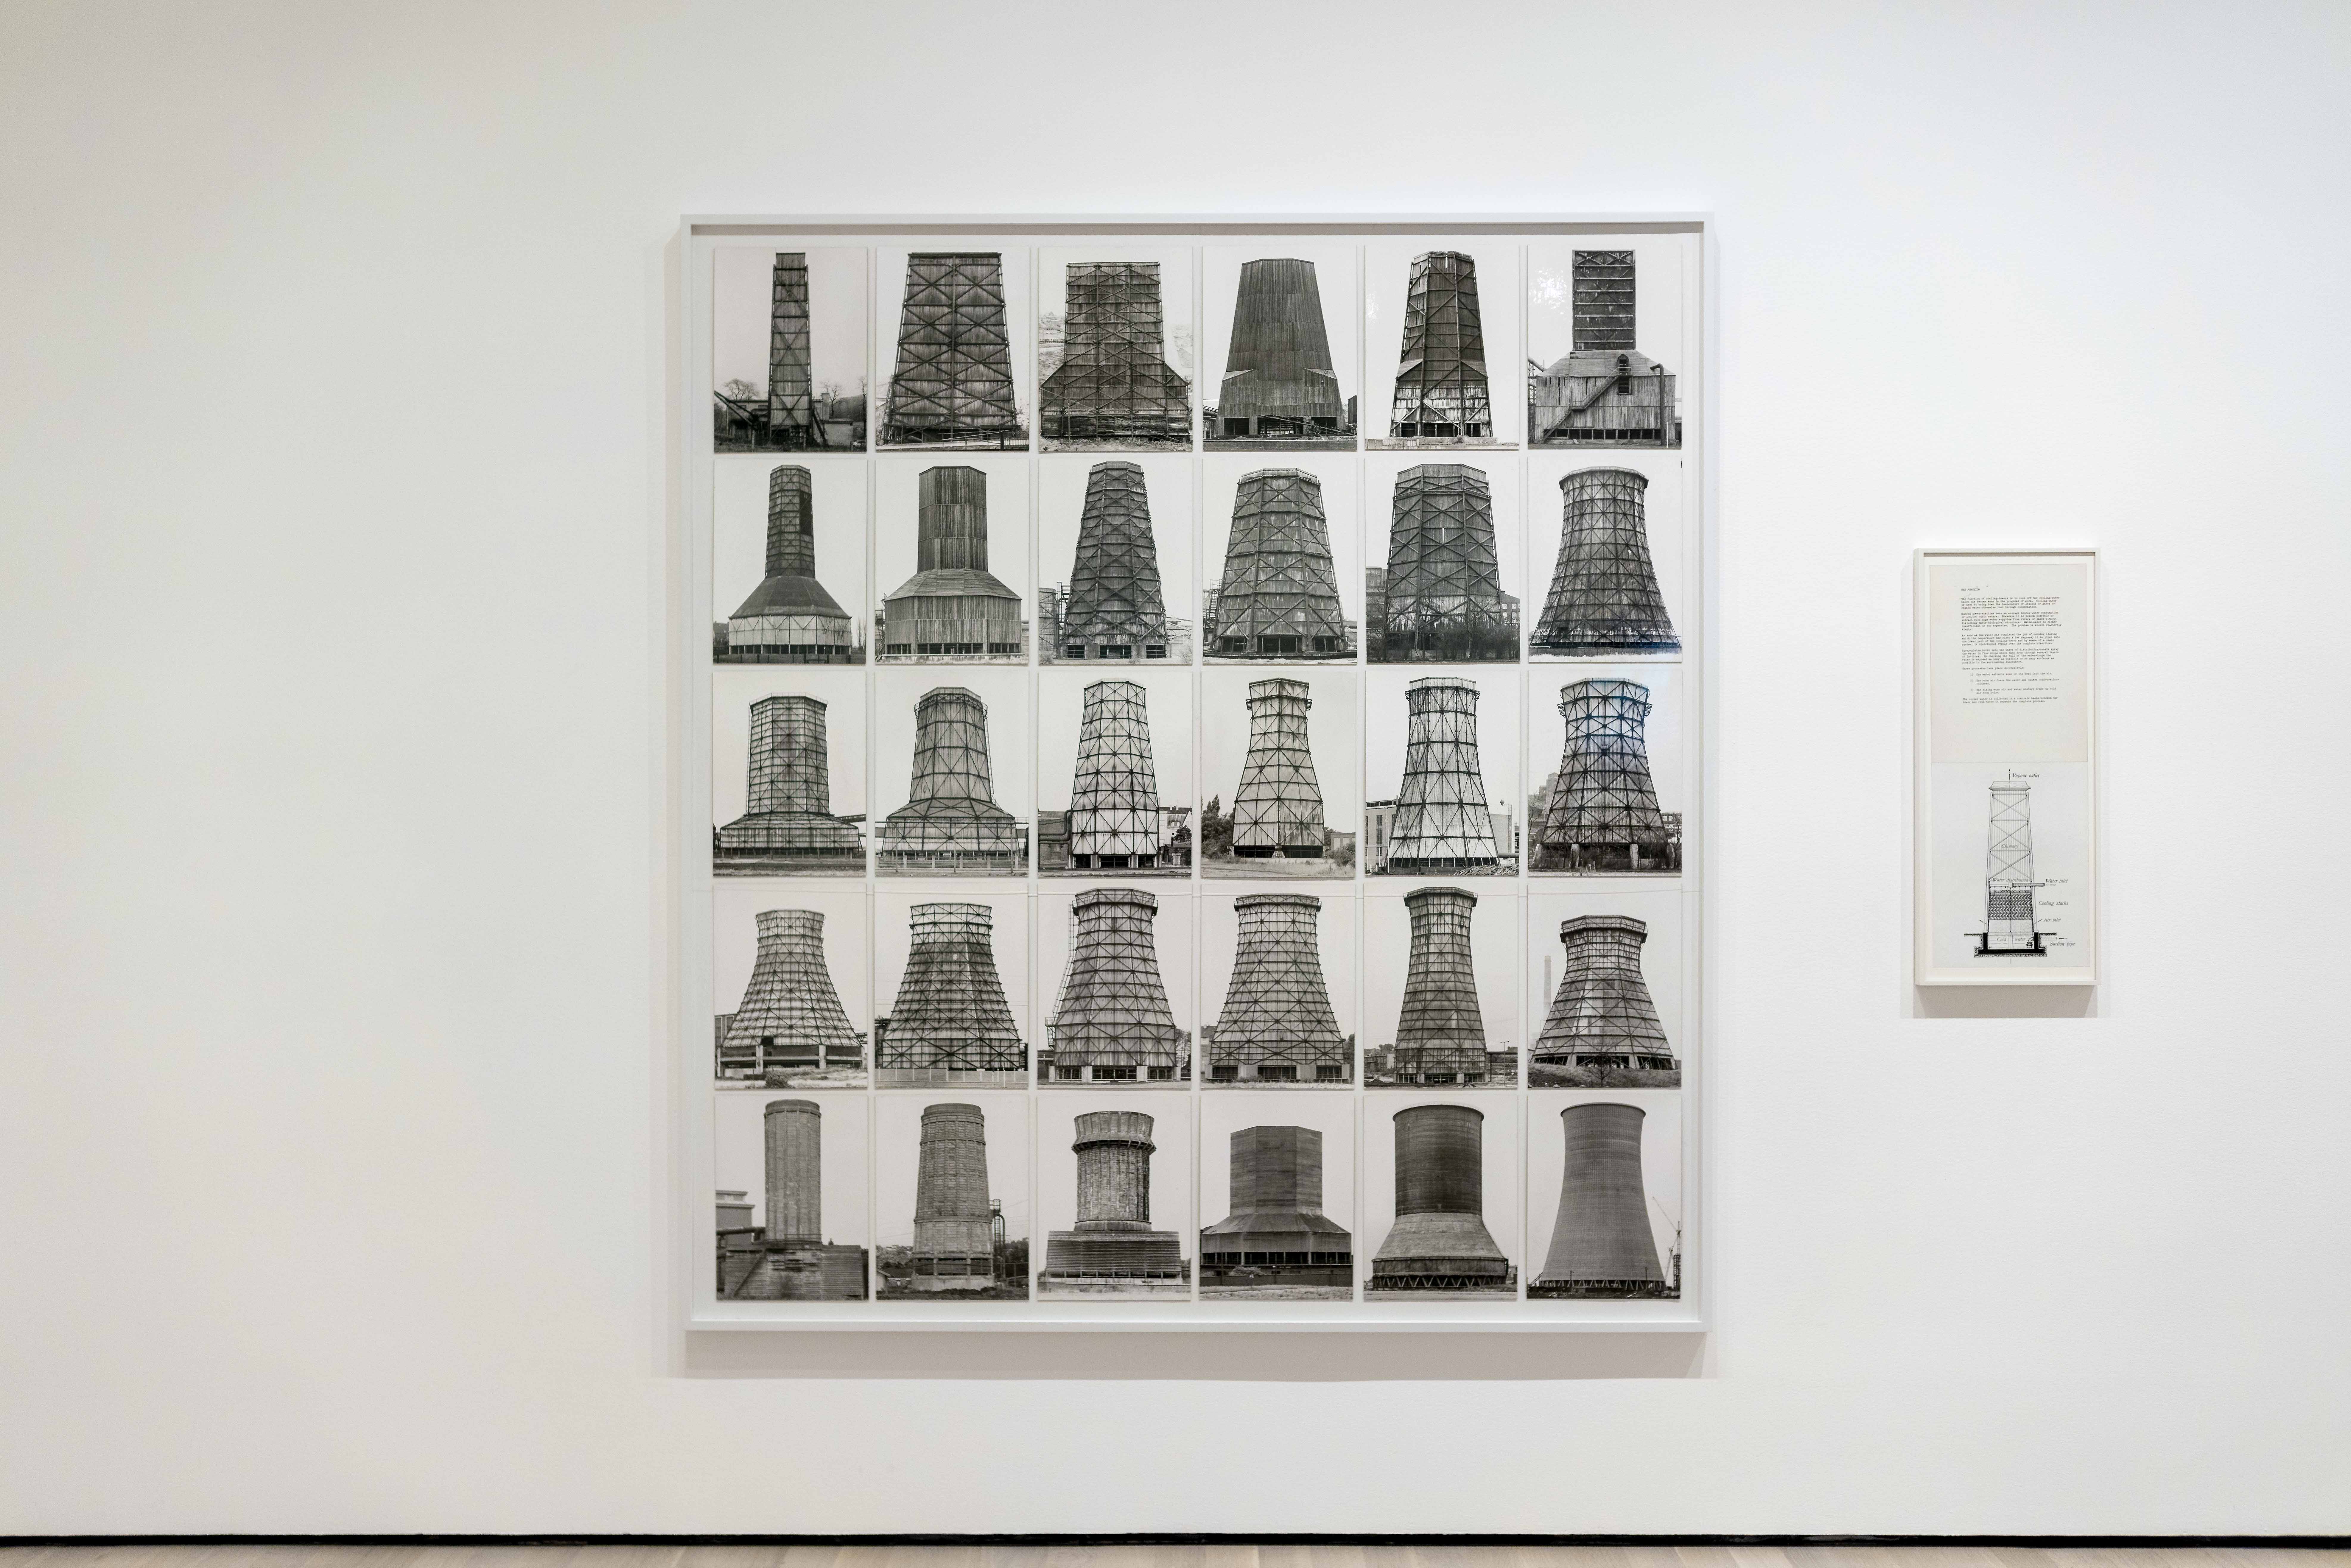 Bernd Becher and Hilla Becher, Anonymous Sculpture, 1970, grid with 30 gelatin silver prints plus diagram, 207.3 × 188.4 cm (The Museum of Modern Art, © Estate of Bernd Becher and Hilla Becher)